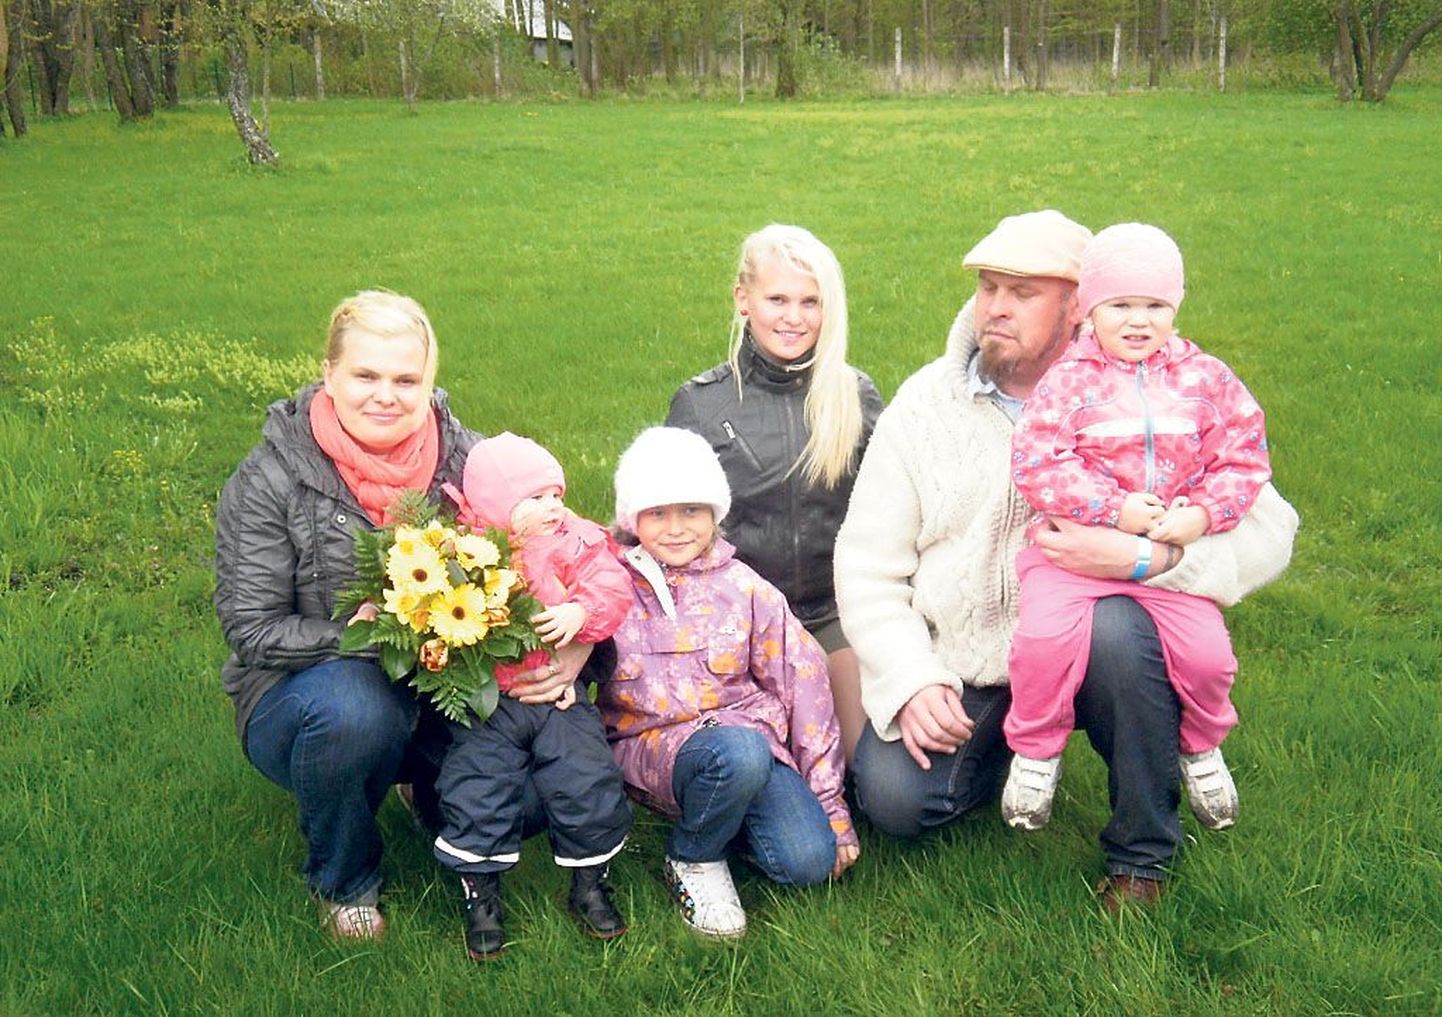 Aasta suurepere elab Audrus - pildil on pereisa Margus koos oma armsa naisperega: ema Merle (vasakul), Maarja Marii, Meeri Marlene, Marie-Mädli, isa süles Margaret Miriam, pildilt puudu on perepoeg Markus Madis.